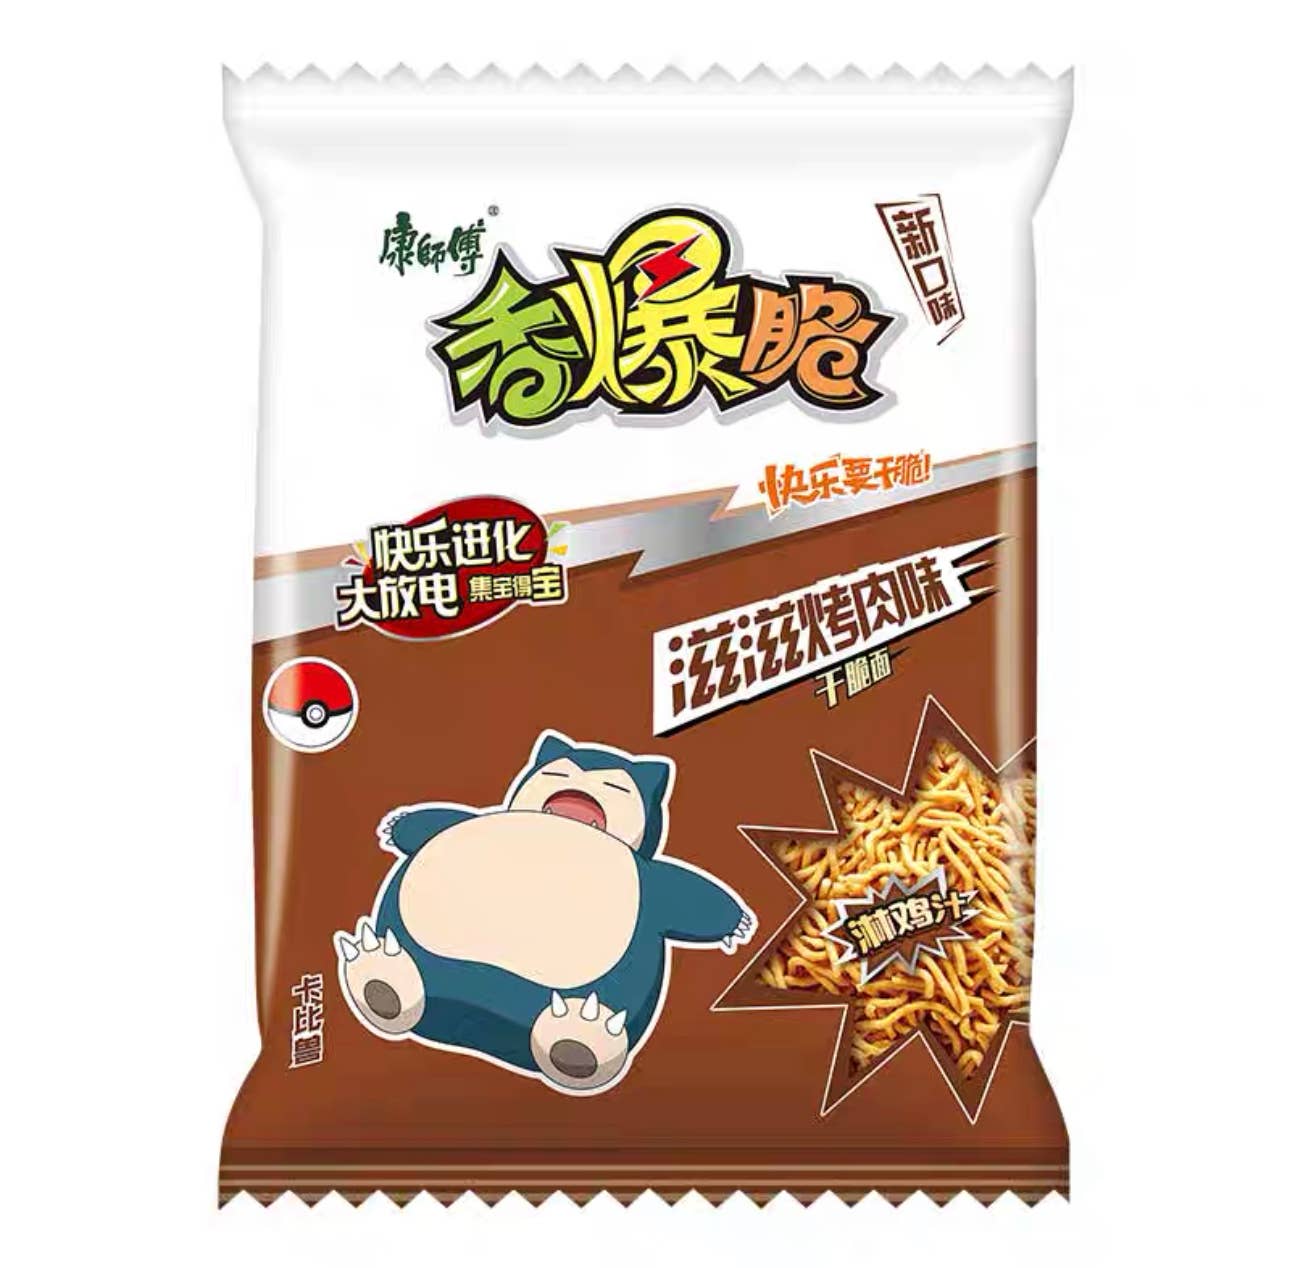 Pokémon Crispy Dry Instant Noodle ZiZi BBQ Flavor (33g) 4-Pack